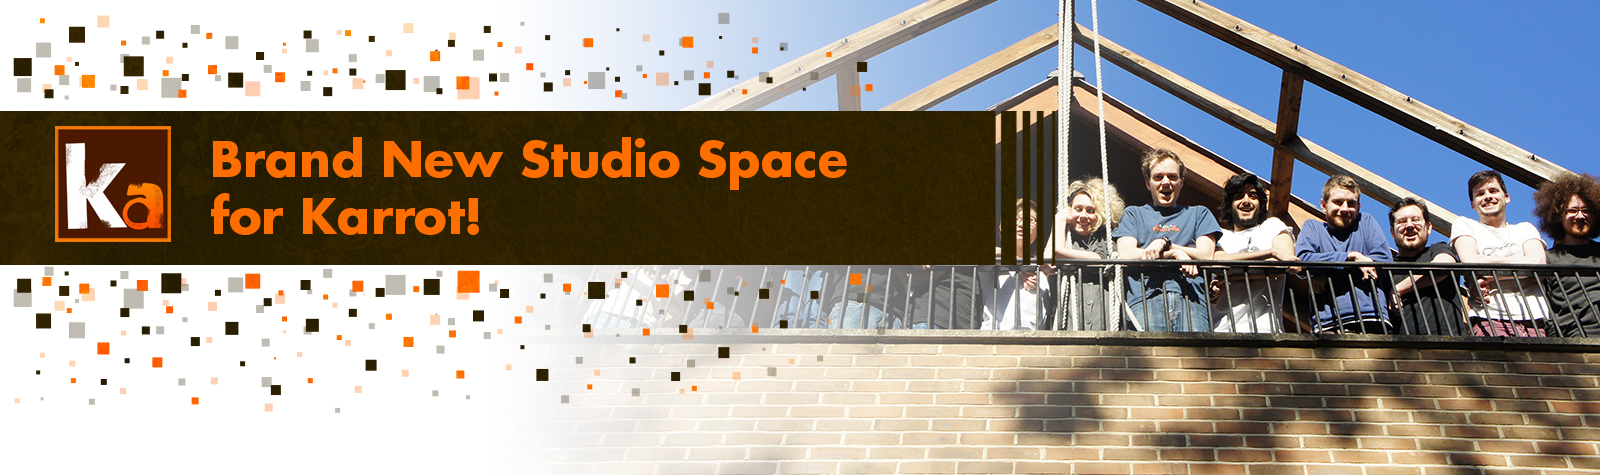 Brand New Studio Space for Karrot!